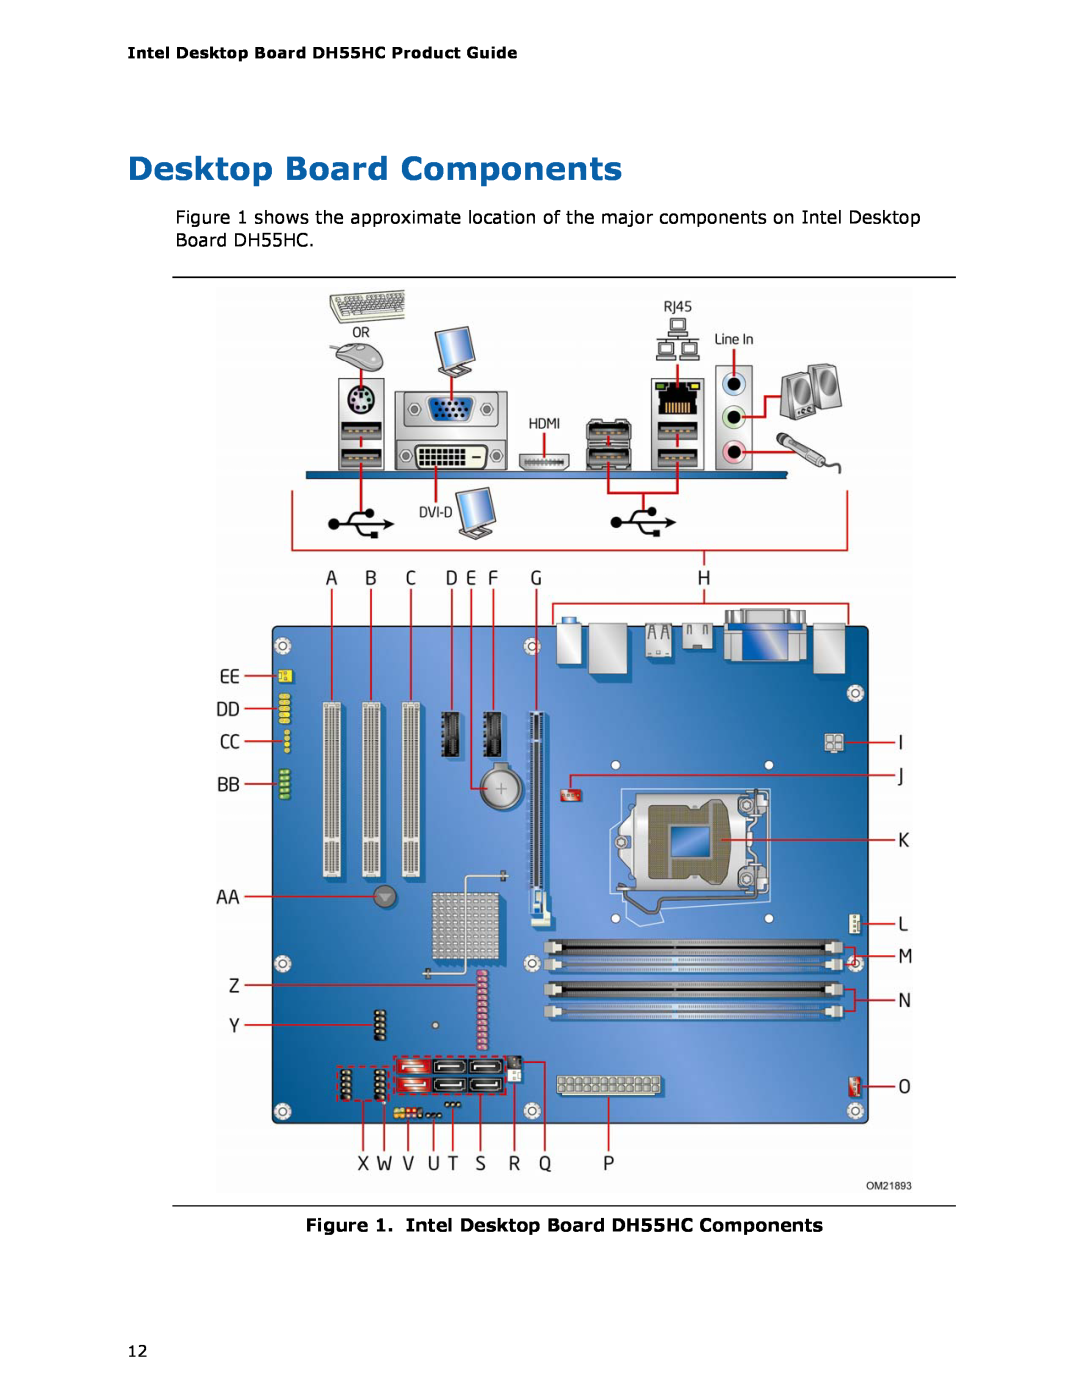 Intel BOXDH55HC manual Desktop Board Components, Intel Desktop Board DH55HC Components 